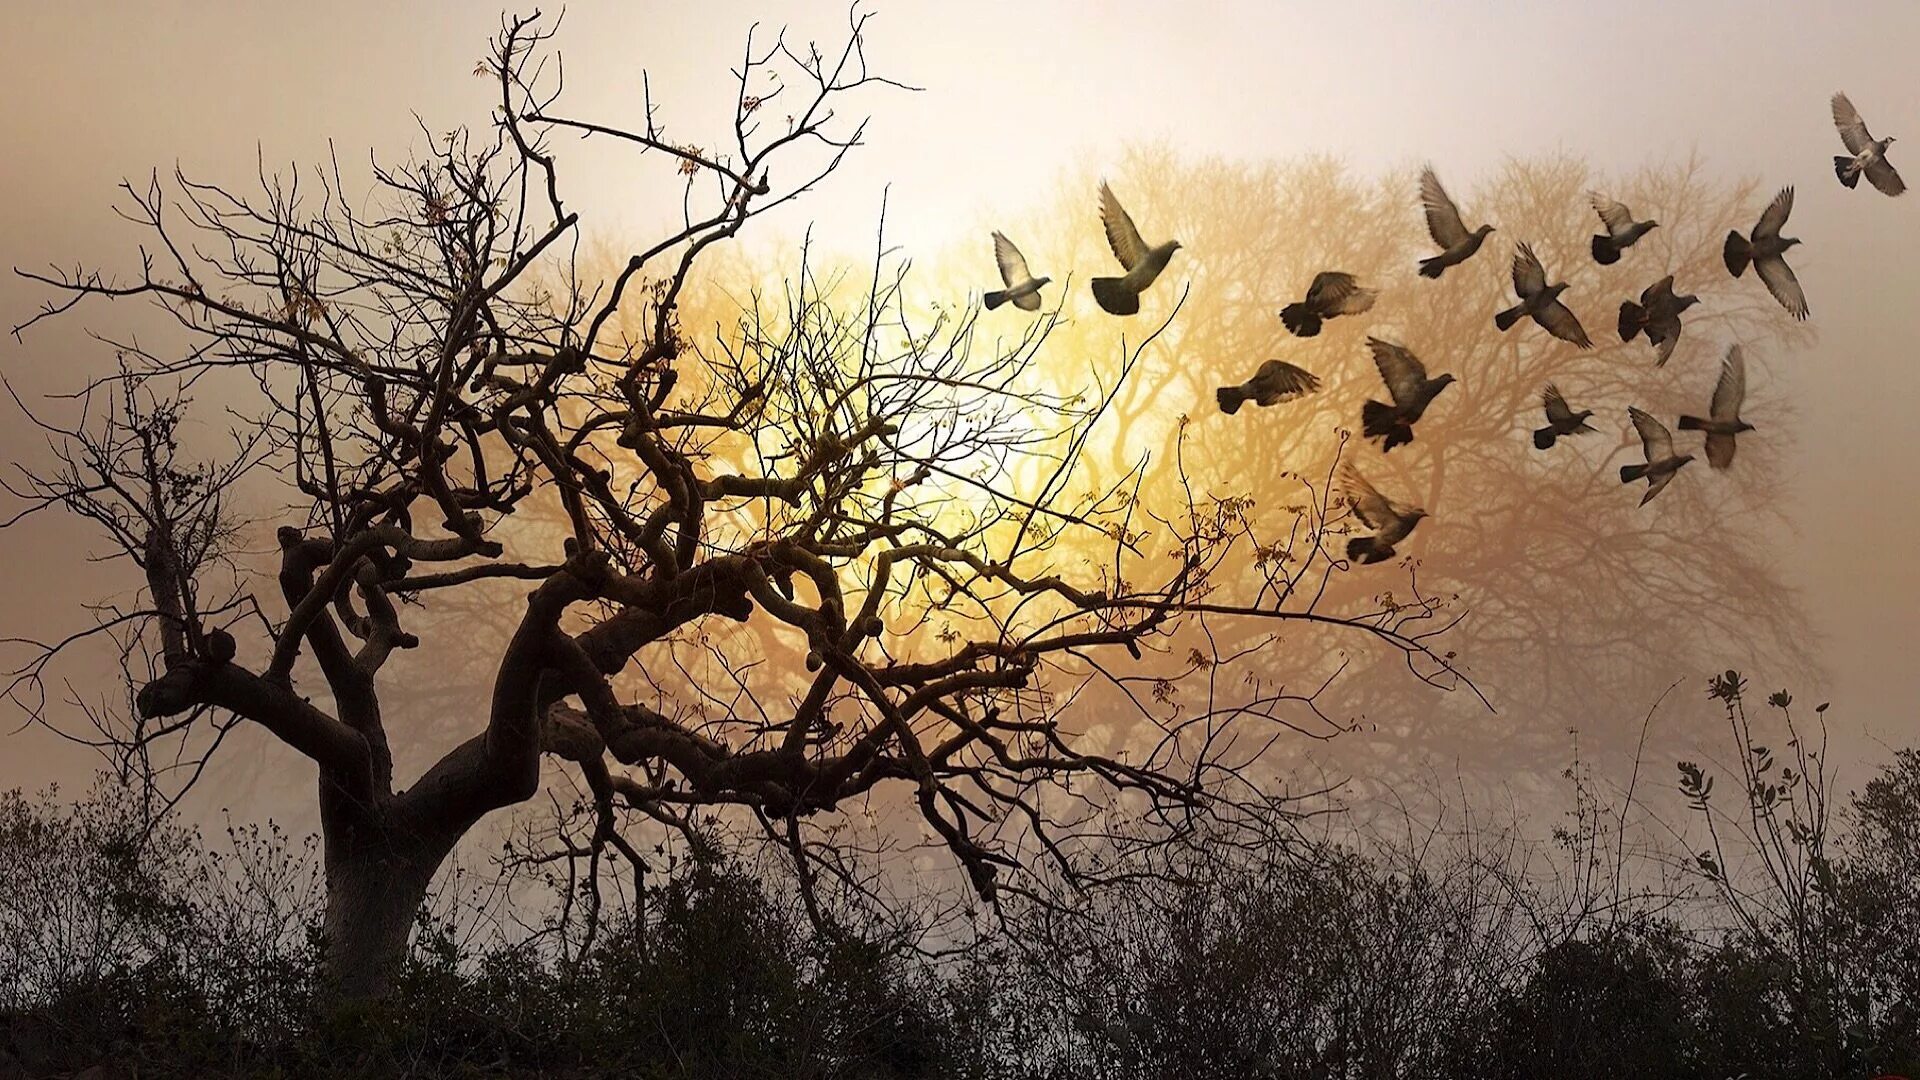 Свет птицы на деревьях. Птица над деревом. Пейзаж сухое дерево. Стая птиц. Дерево и разлетающиеся птицы.